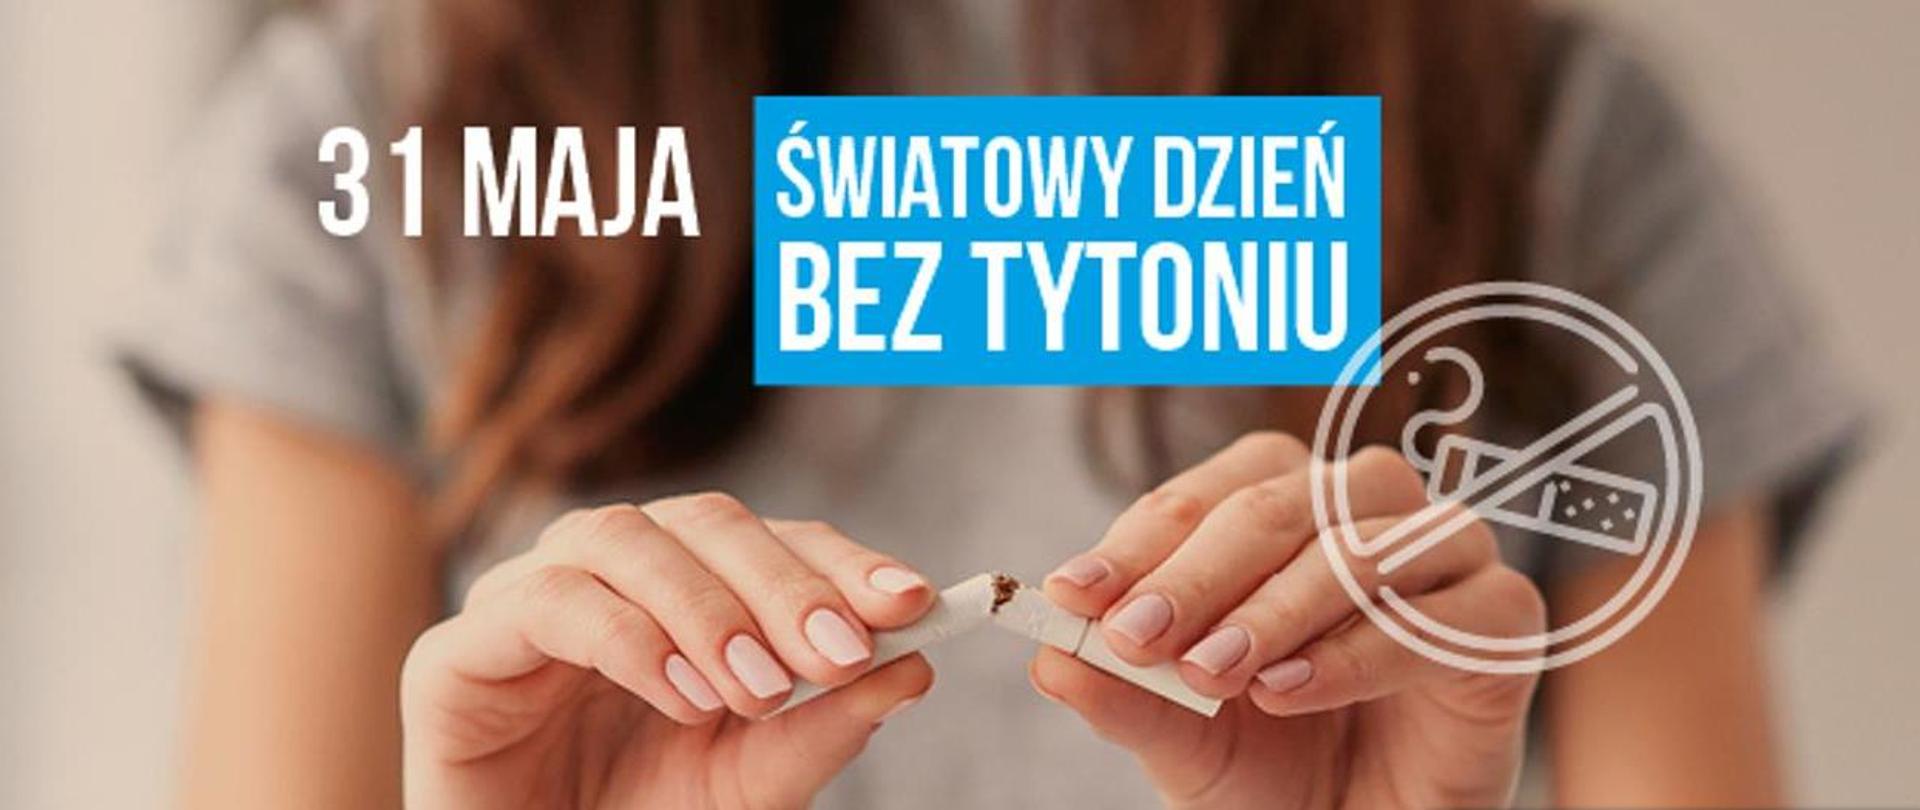 Światowy dzień bez tytoniu 2021